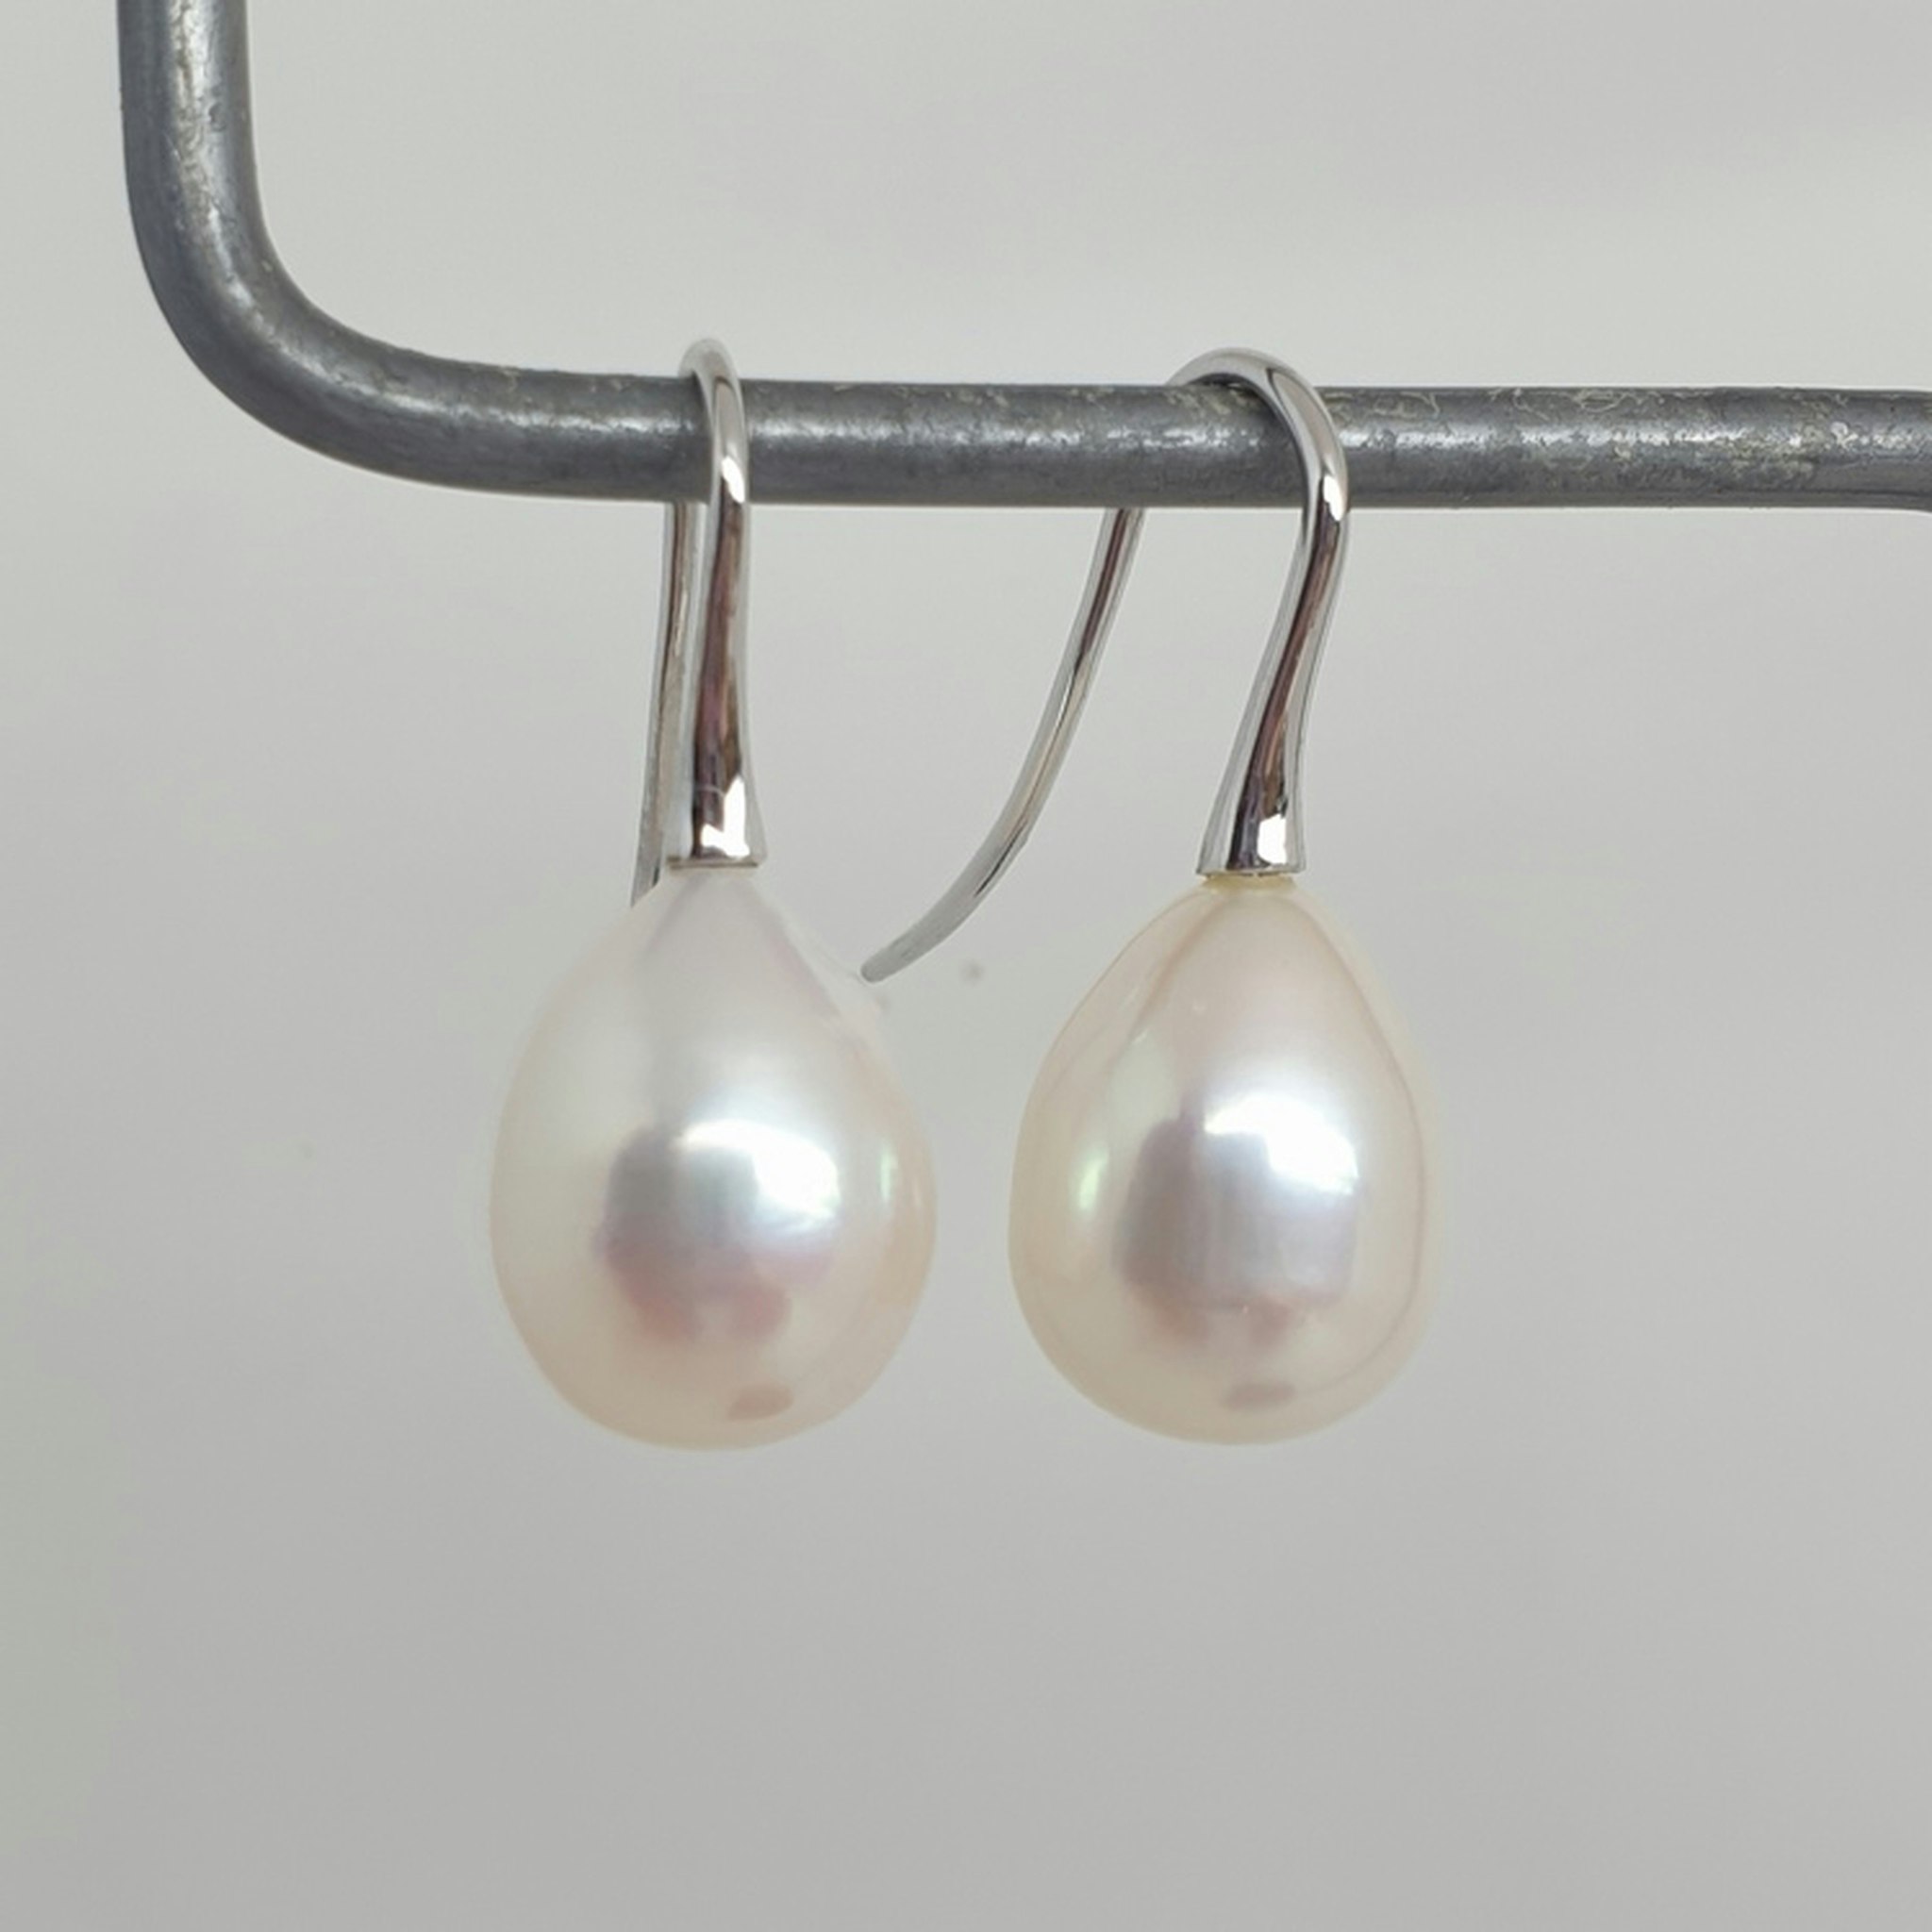 Vita stora droppformade pärlor 11 mm på 18K vitguldskrok